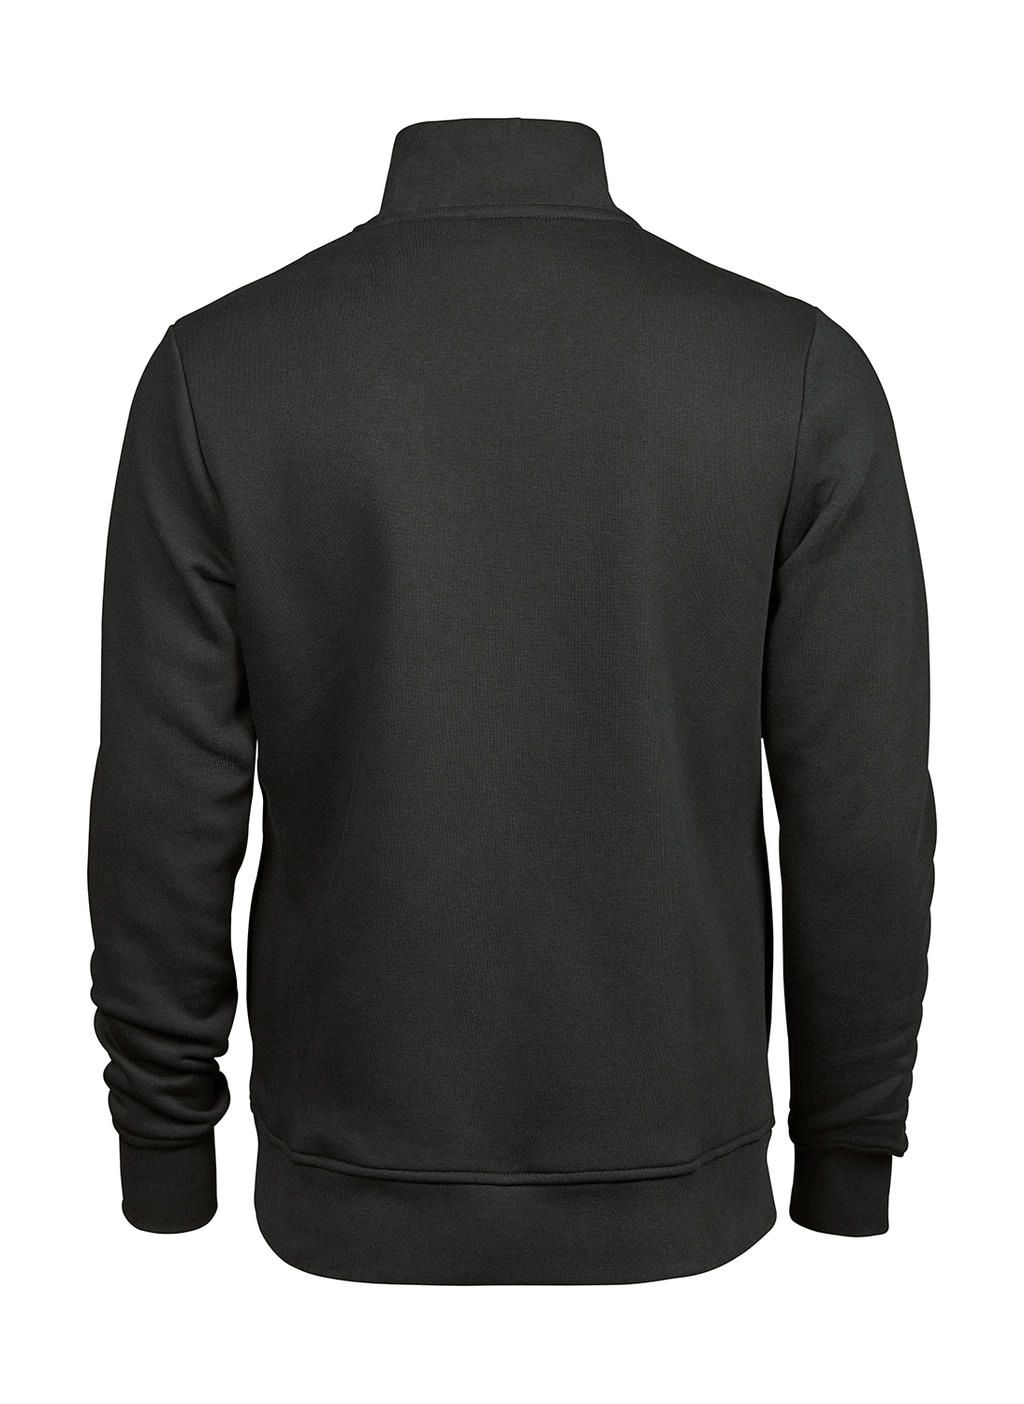 Half Zip Sweatshirt zum Besticken und Bedrucken in der Farbe Dark Grey mit Ihren Logo, Schriftzug oder Motiv.